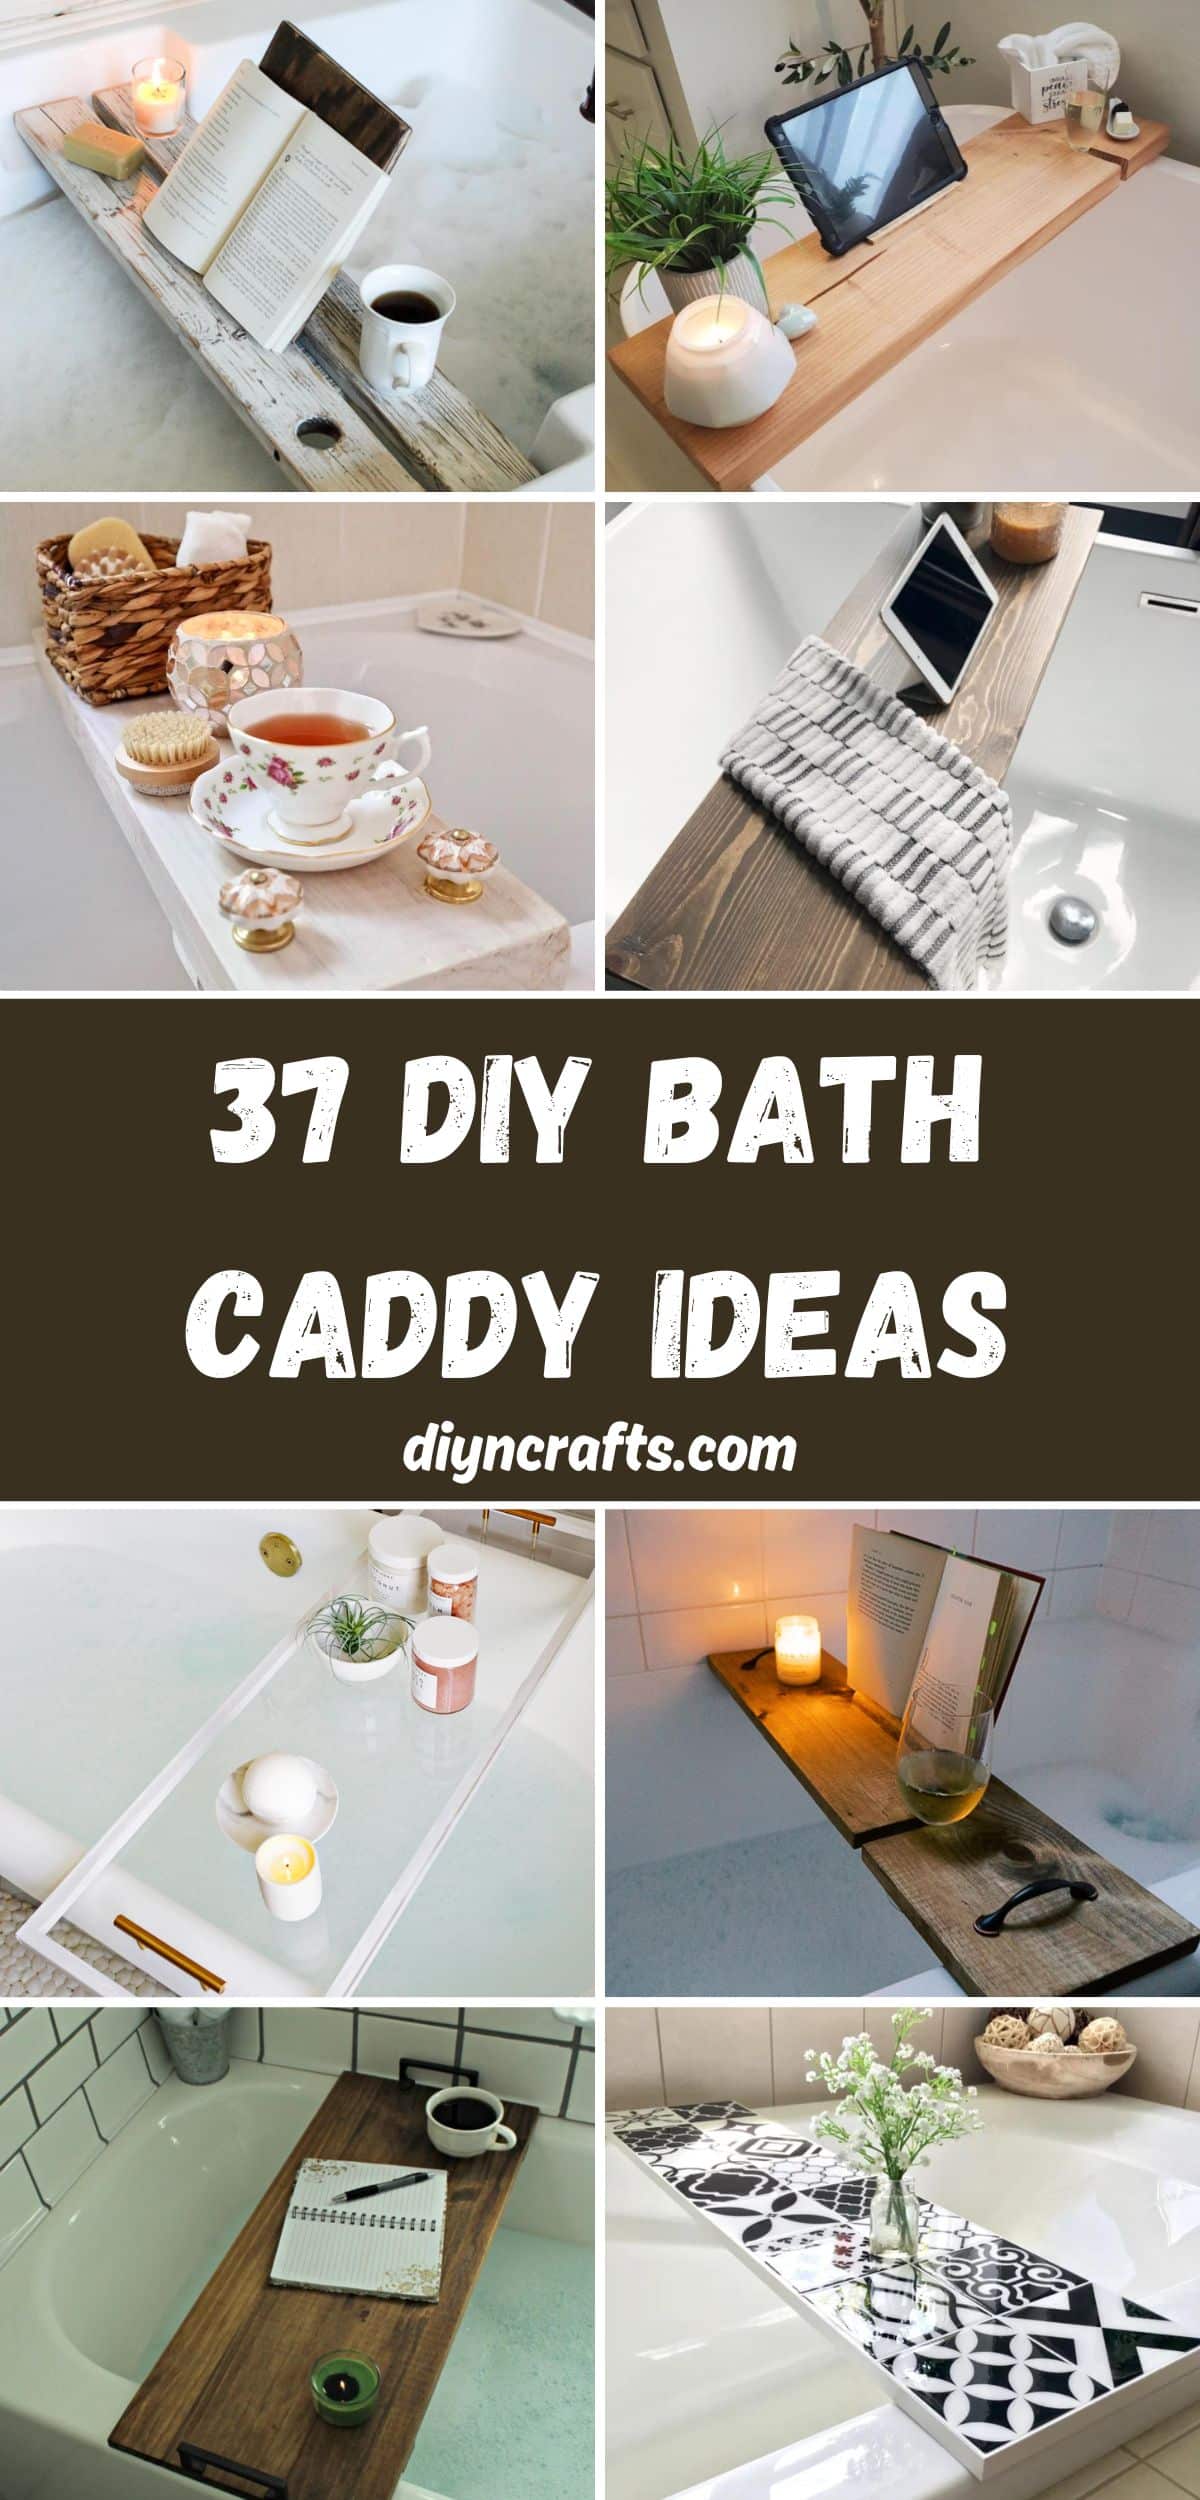 37 DIY Bath Caddy Ideas collage.